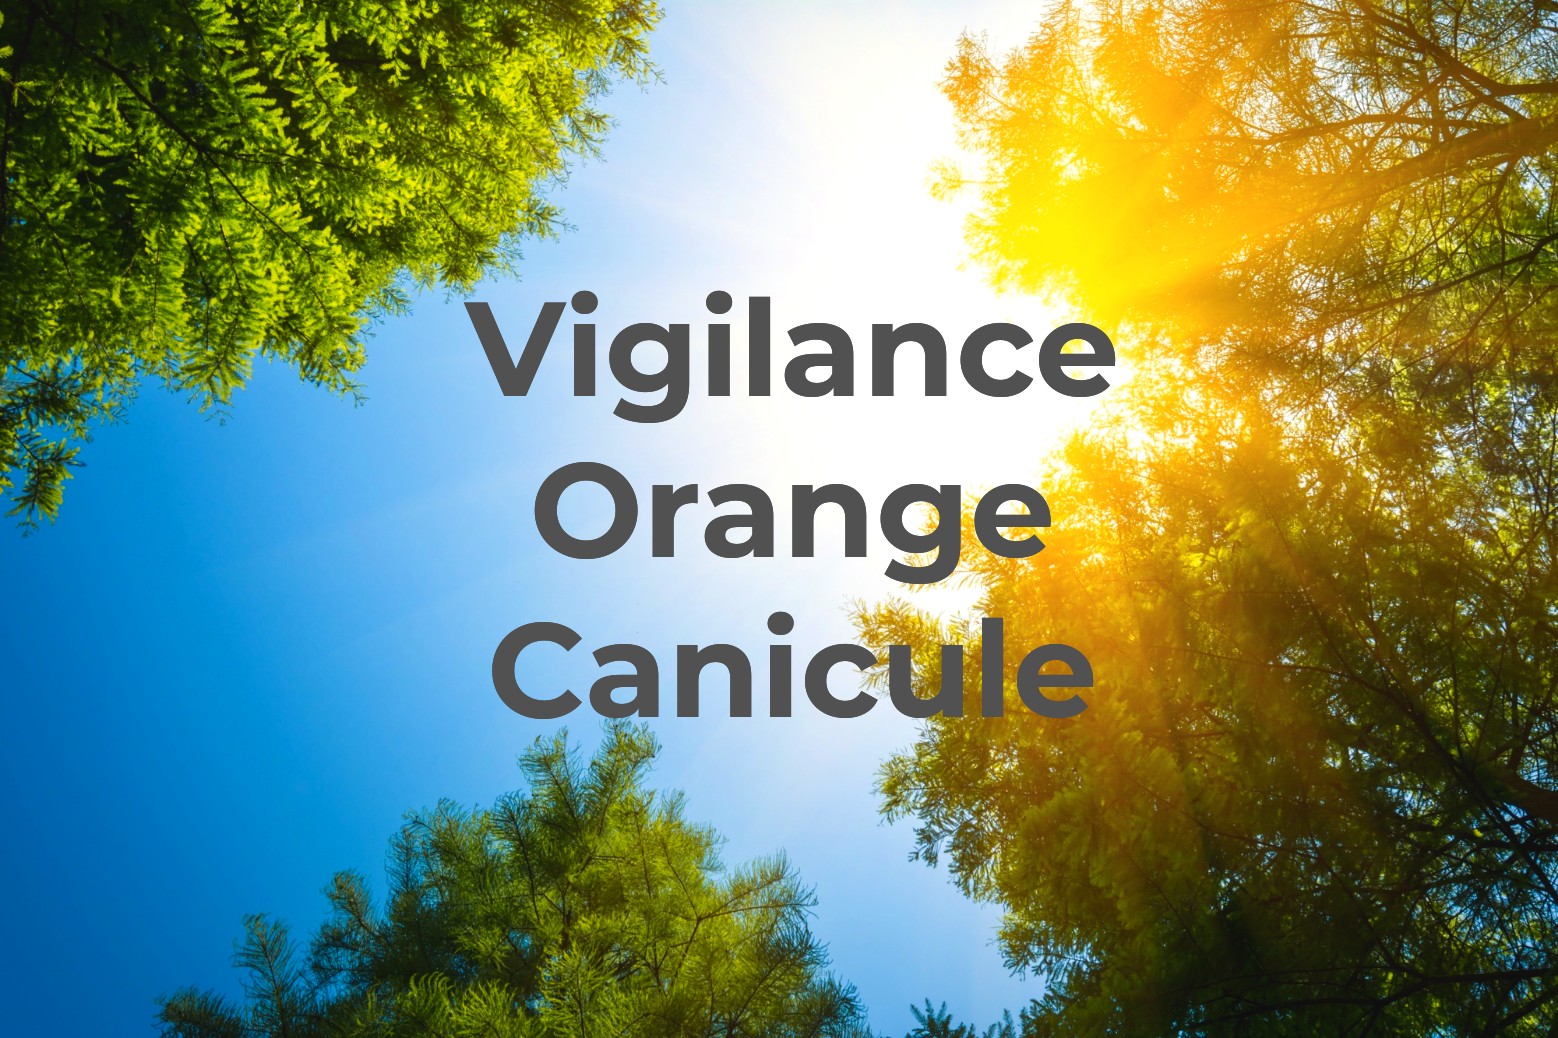 Vigilance orange : Canicule